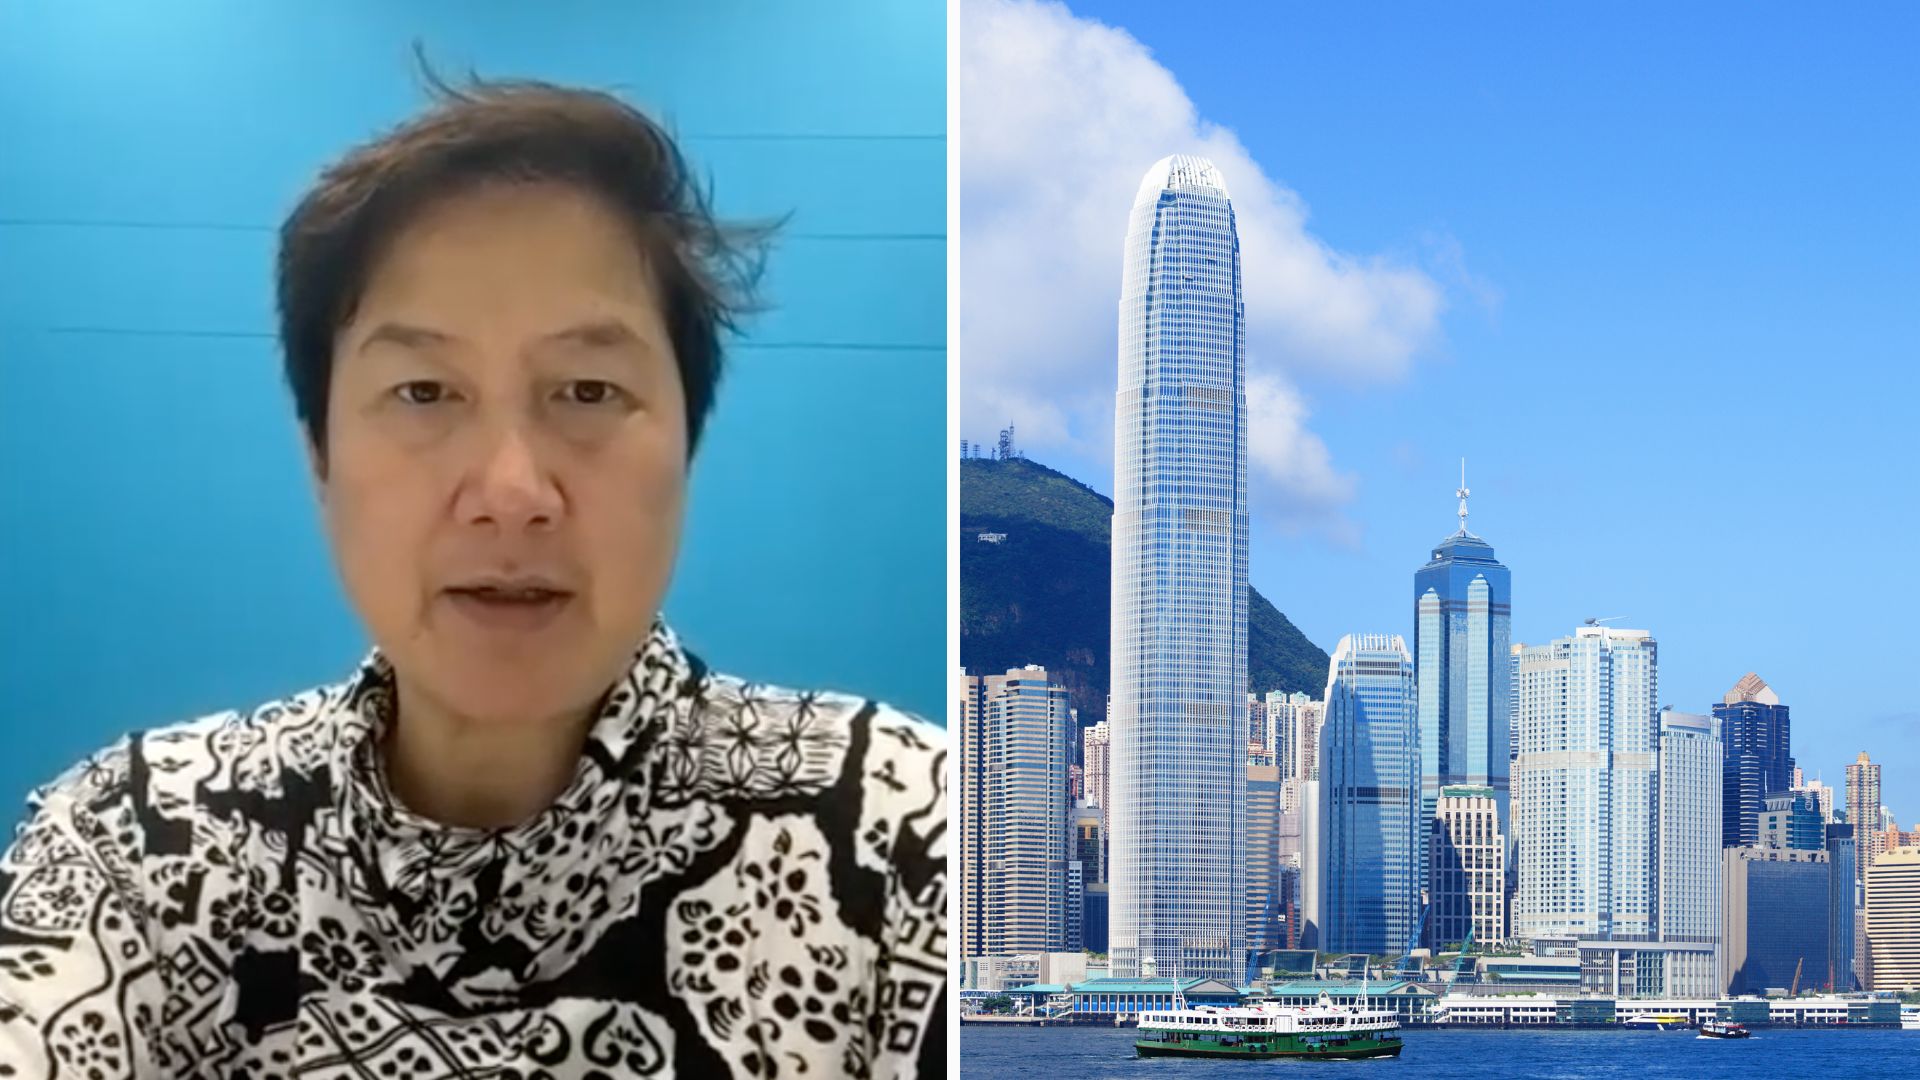 Hong Kong kan møte etterslep i kryptolisenssøknader ettersom etterspørselen vokser, sier tidligere SFC-regulator